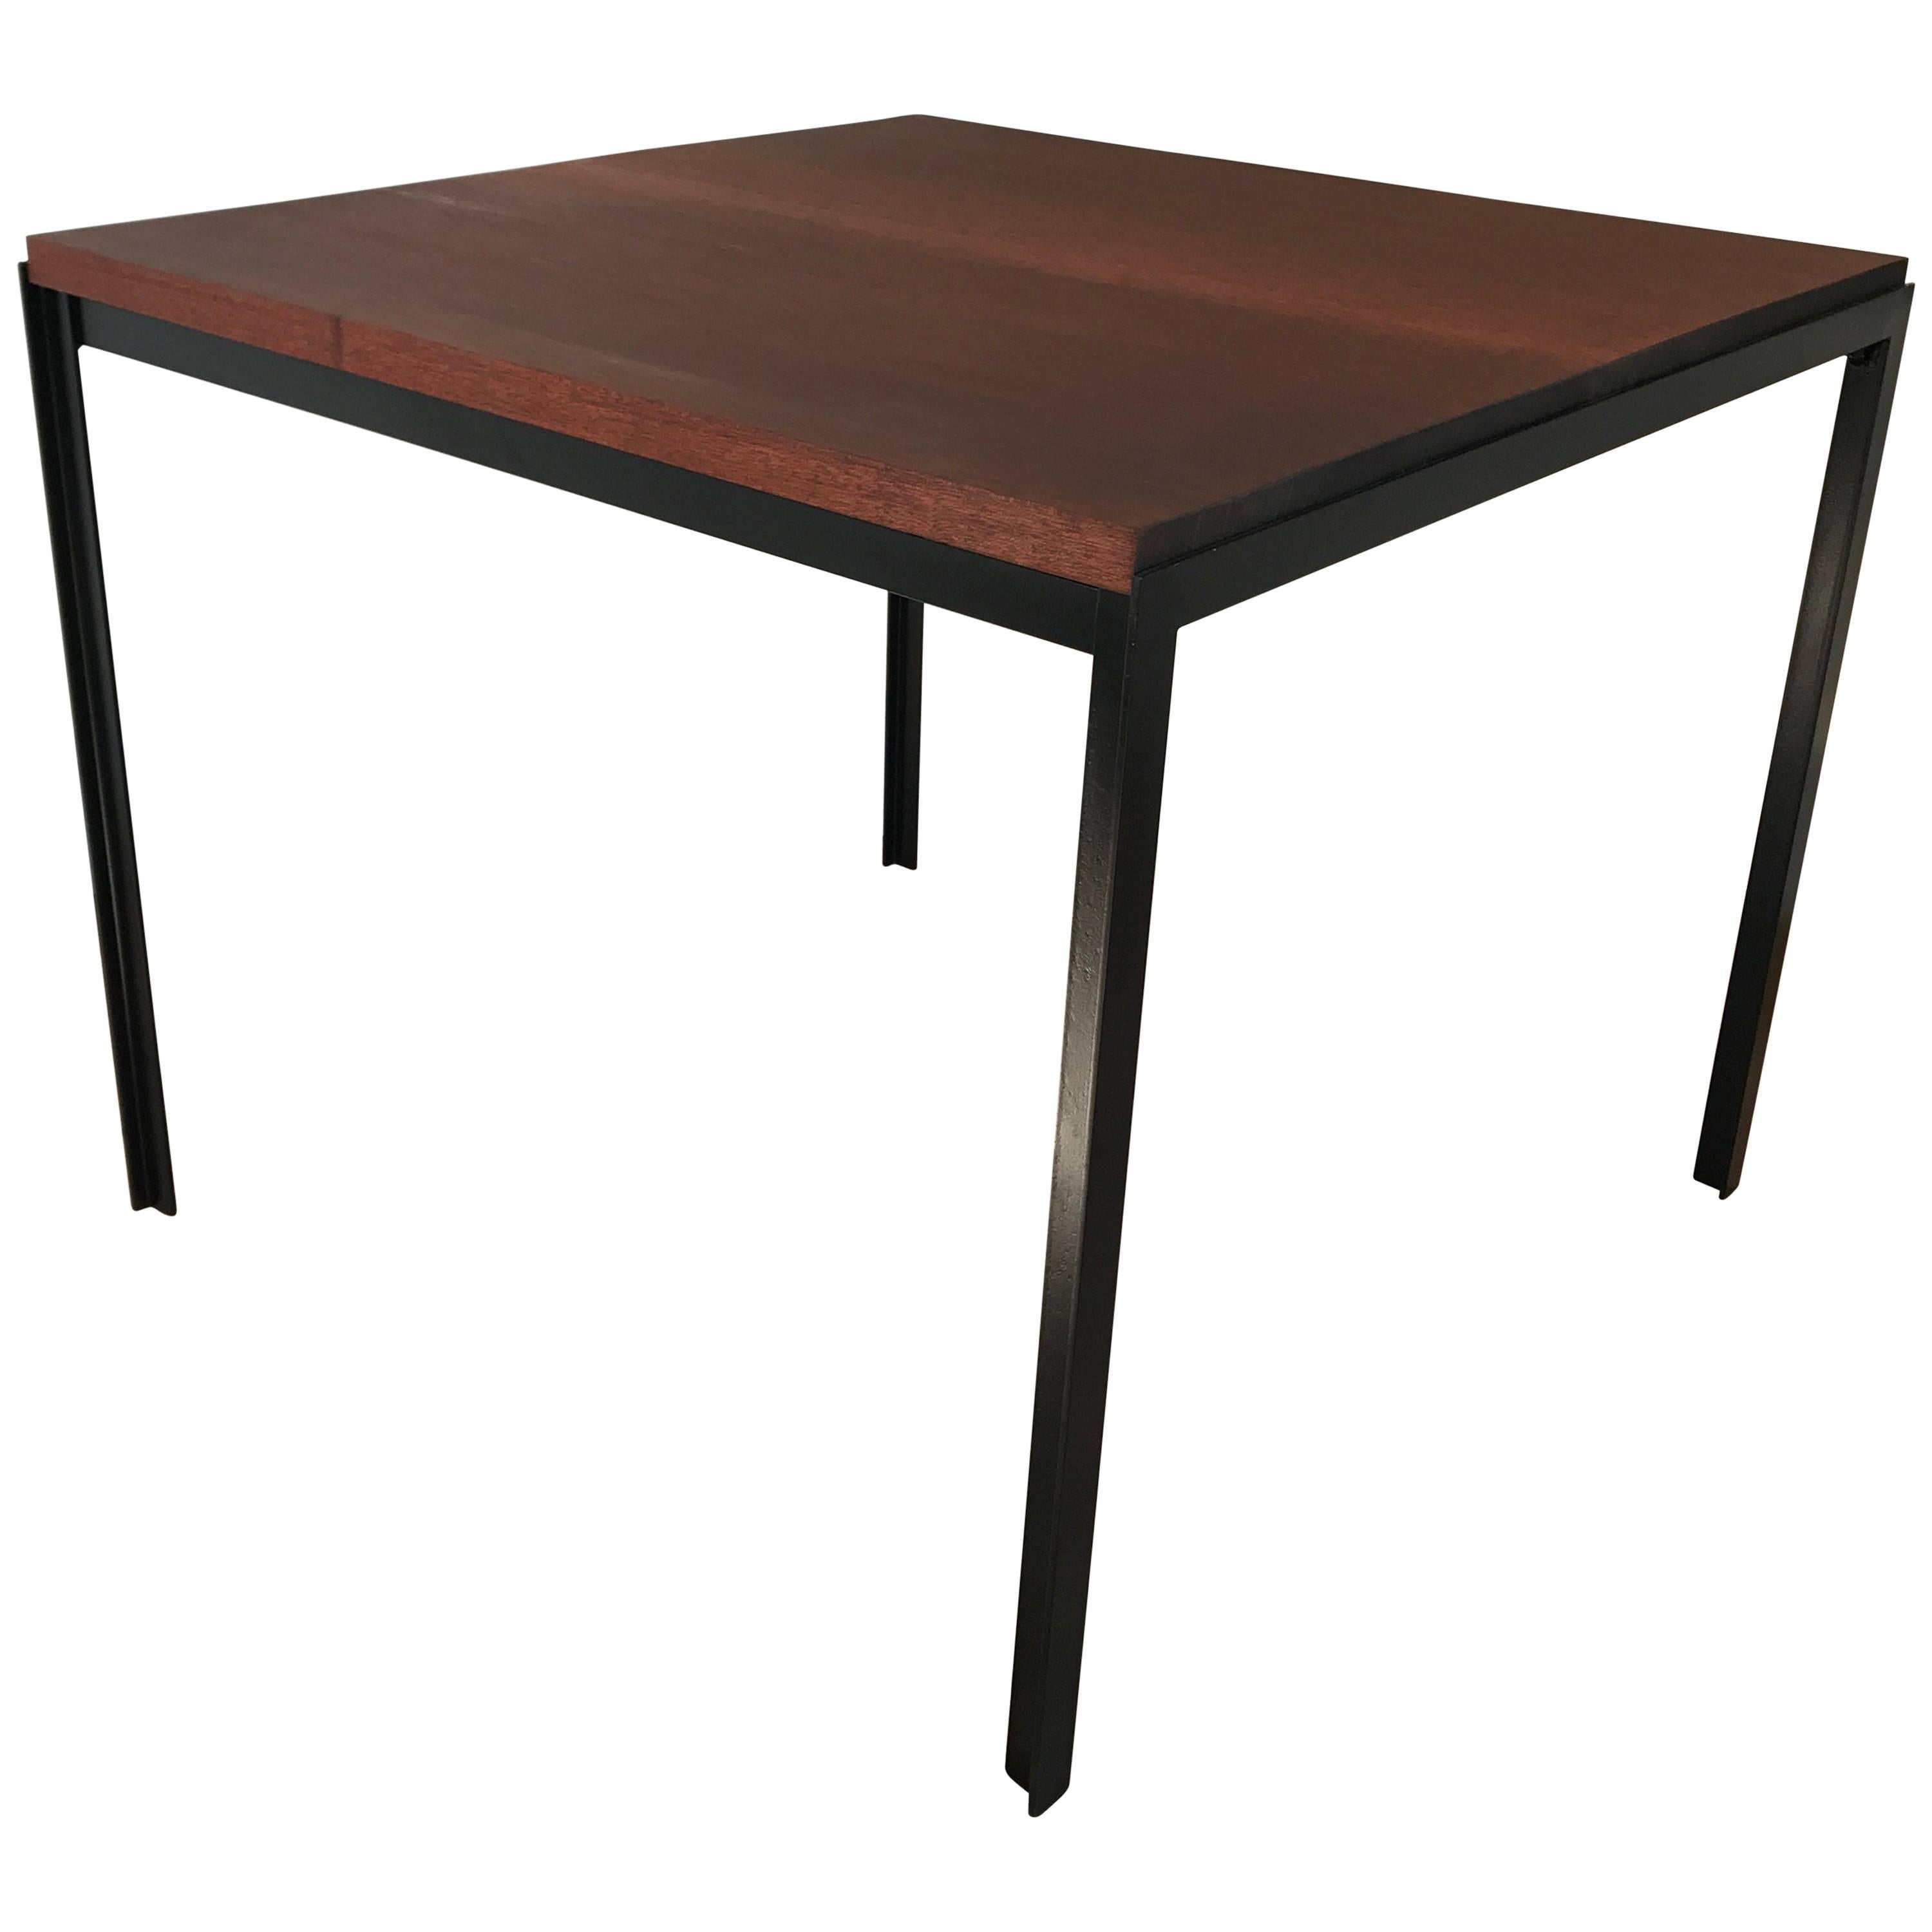 Table carrée à angle droit de Florence Knoll, avec structure en fer et plateau en acajou. La nouvelle finition est traitée pour être utilisée à l'intérieur ou à l'extérieur.